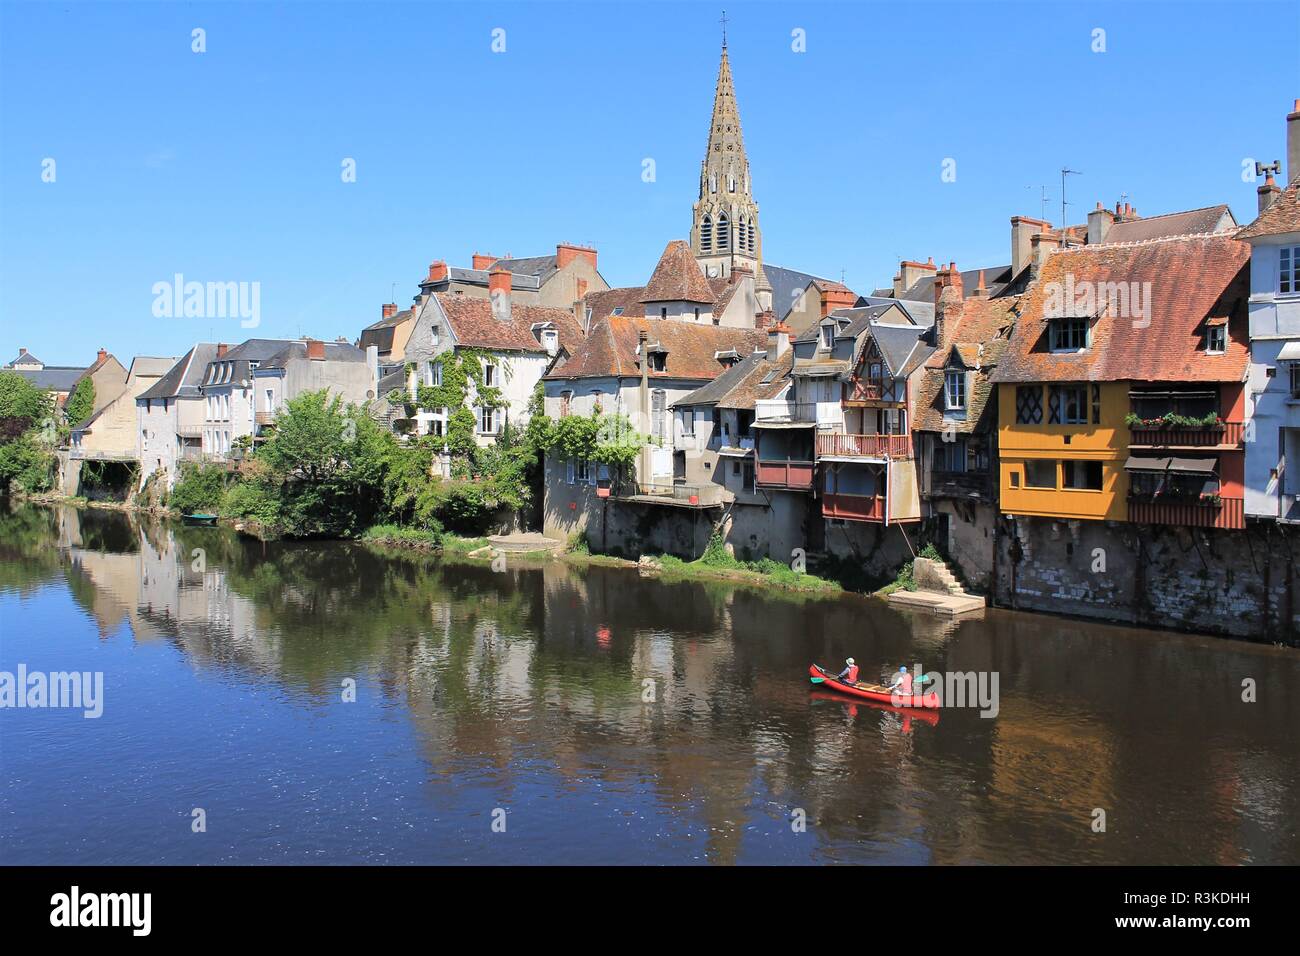 Les gens du kayak sur la rivière creuse en centre historique de la ville d'Argenton sur Creuse appelée la Venise du Berry, Berry - Indre, France Banque D'Images